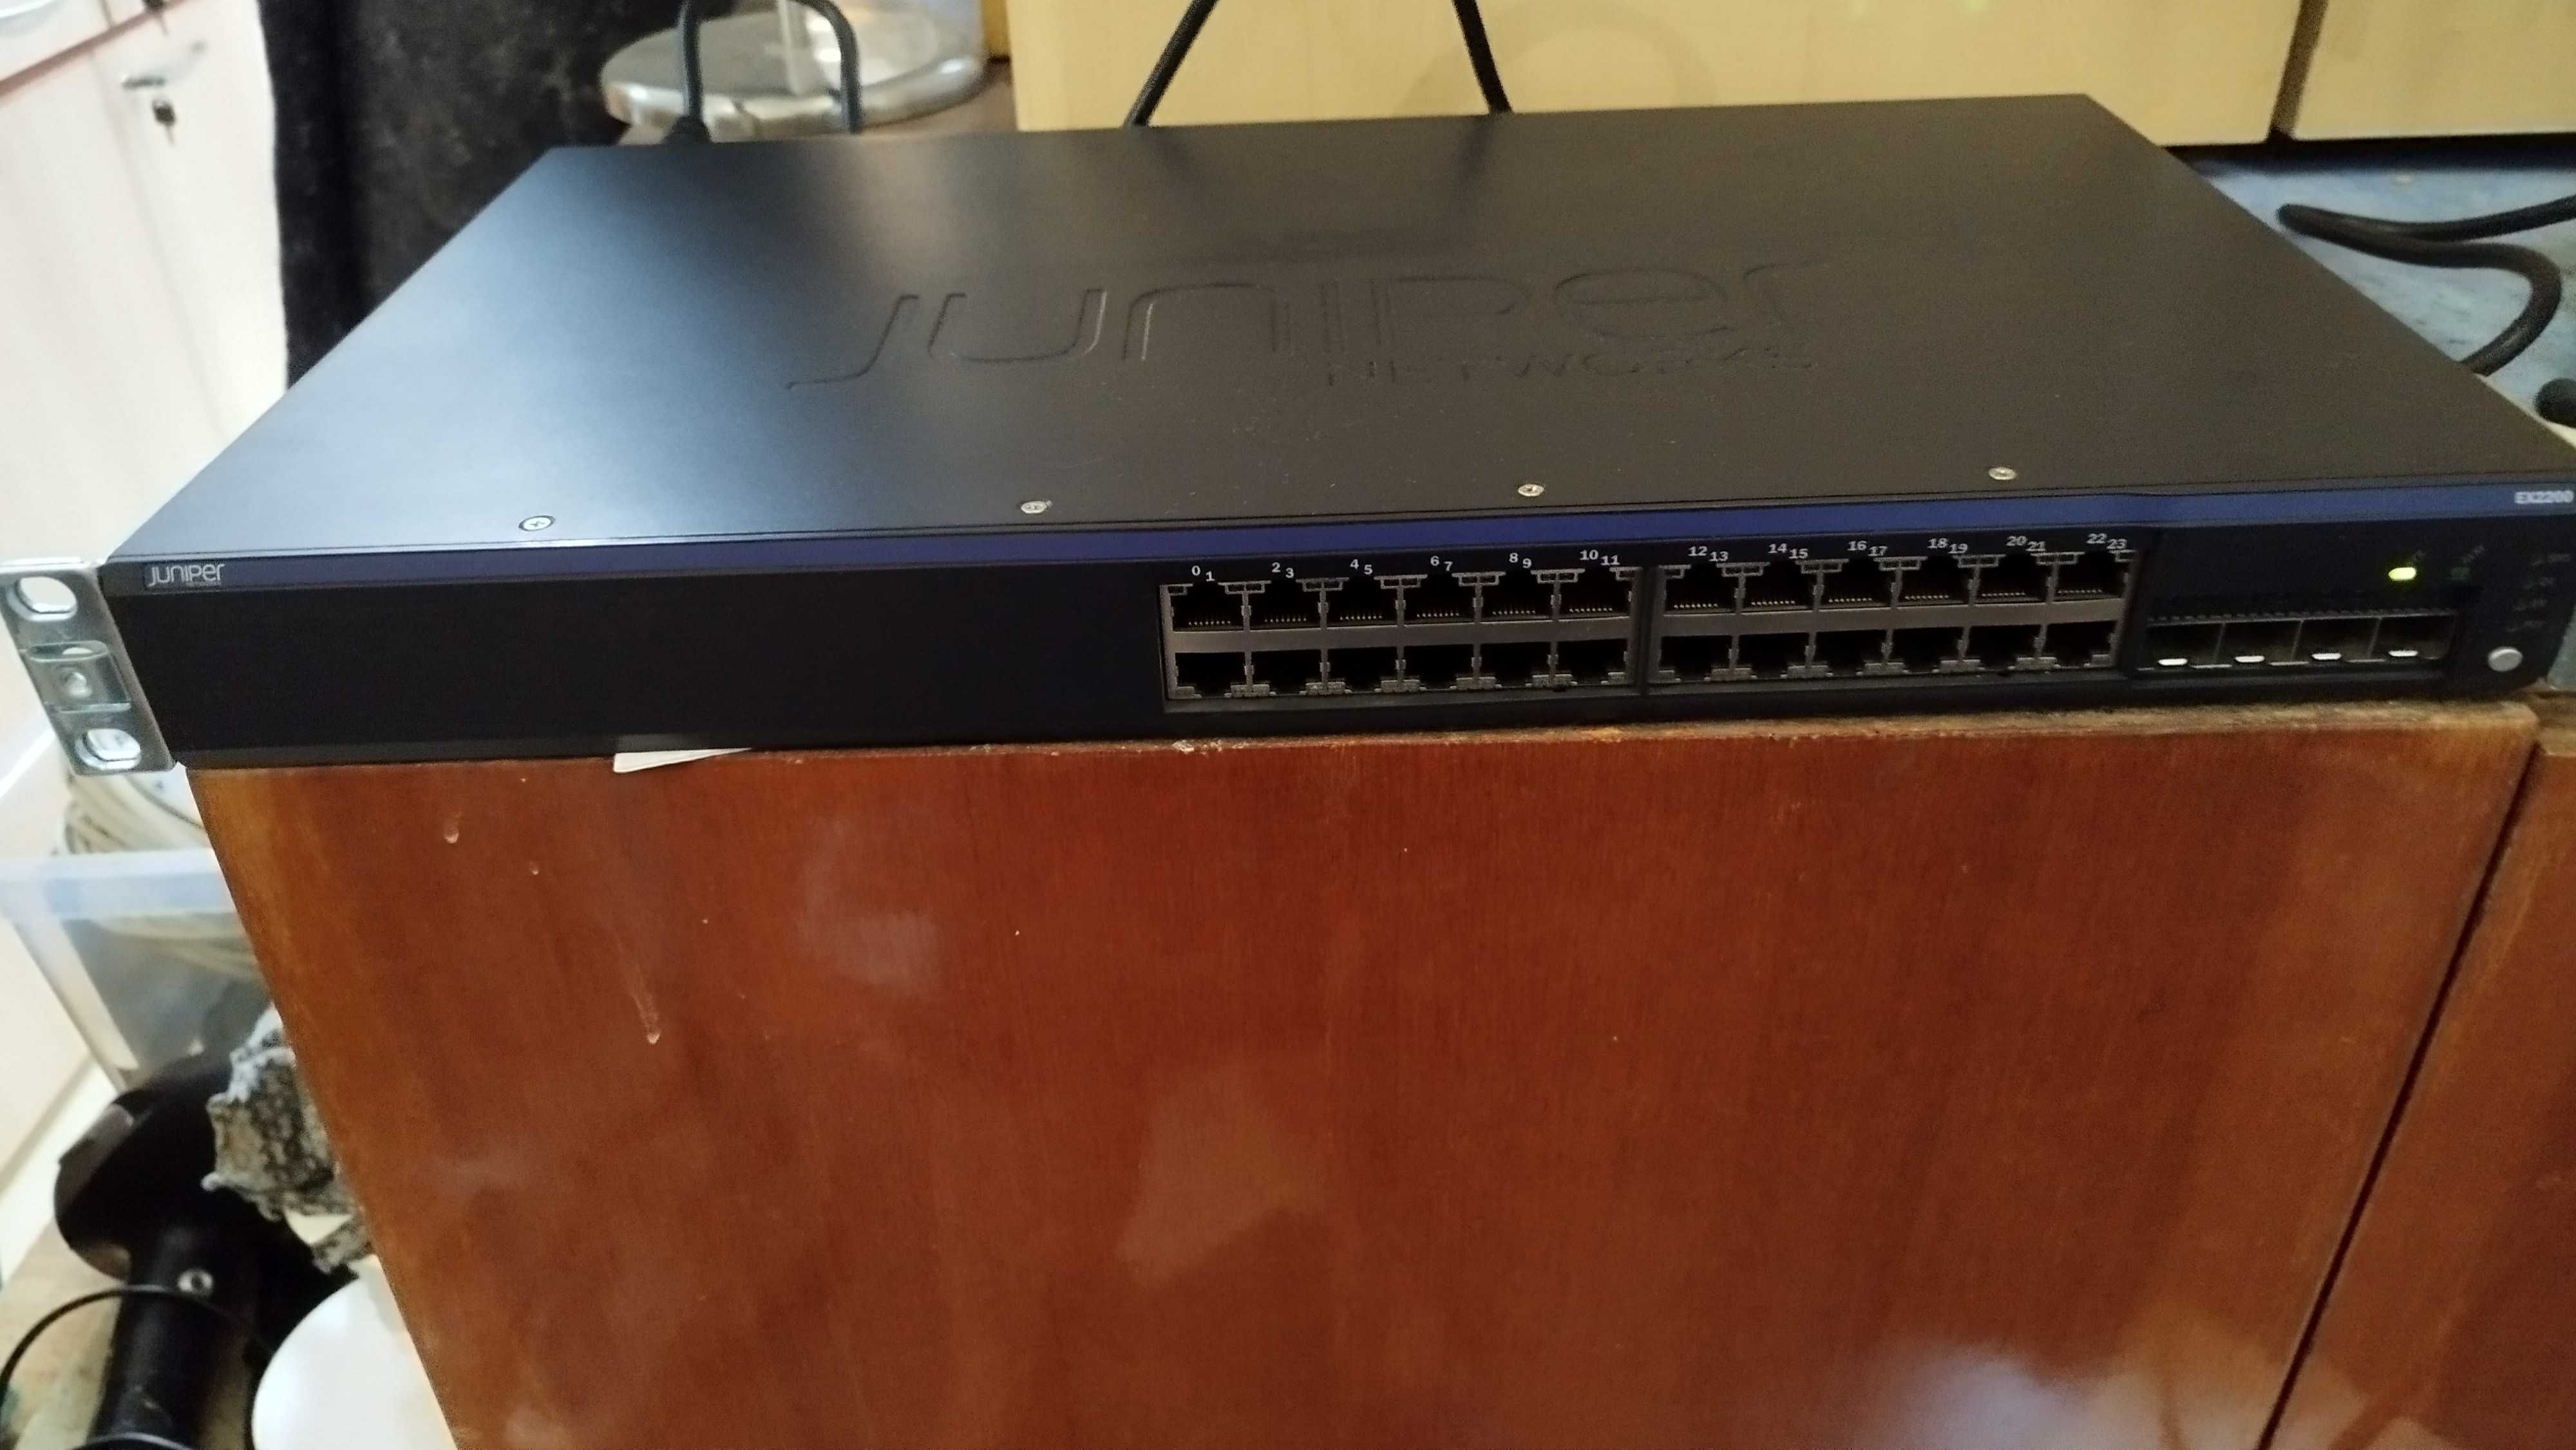 Суич  24-портов превключвател Juniper Networks EX2200  ex 2200-24T- 4G